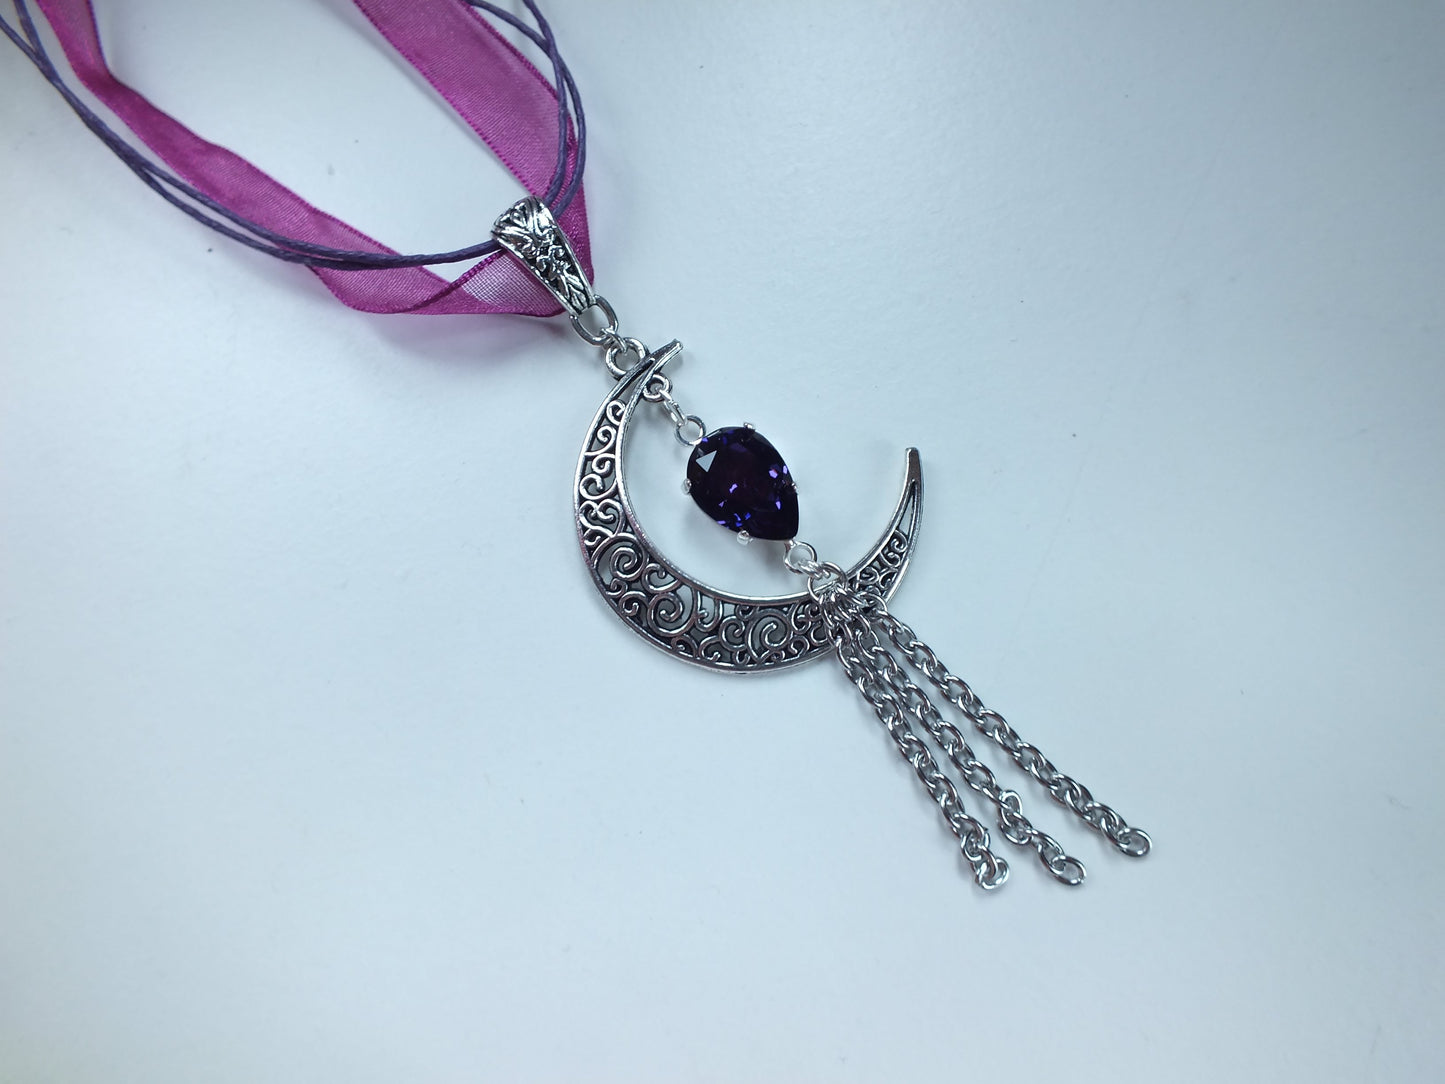 Collier décoré d'un swarovski original violet et belle Lune en filigrane, cordon violet multifils ou chaîne en acier inoxydable